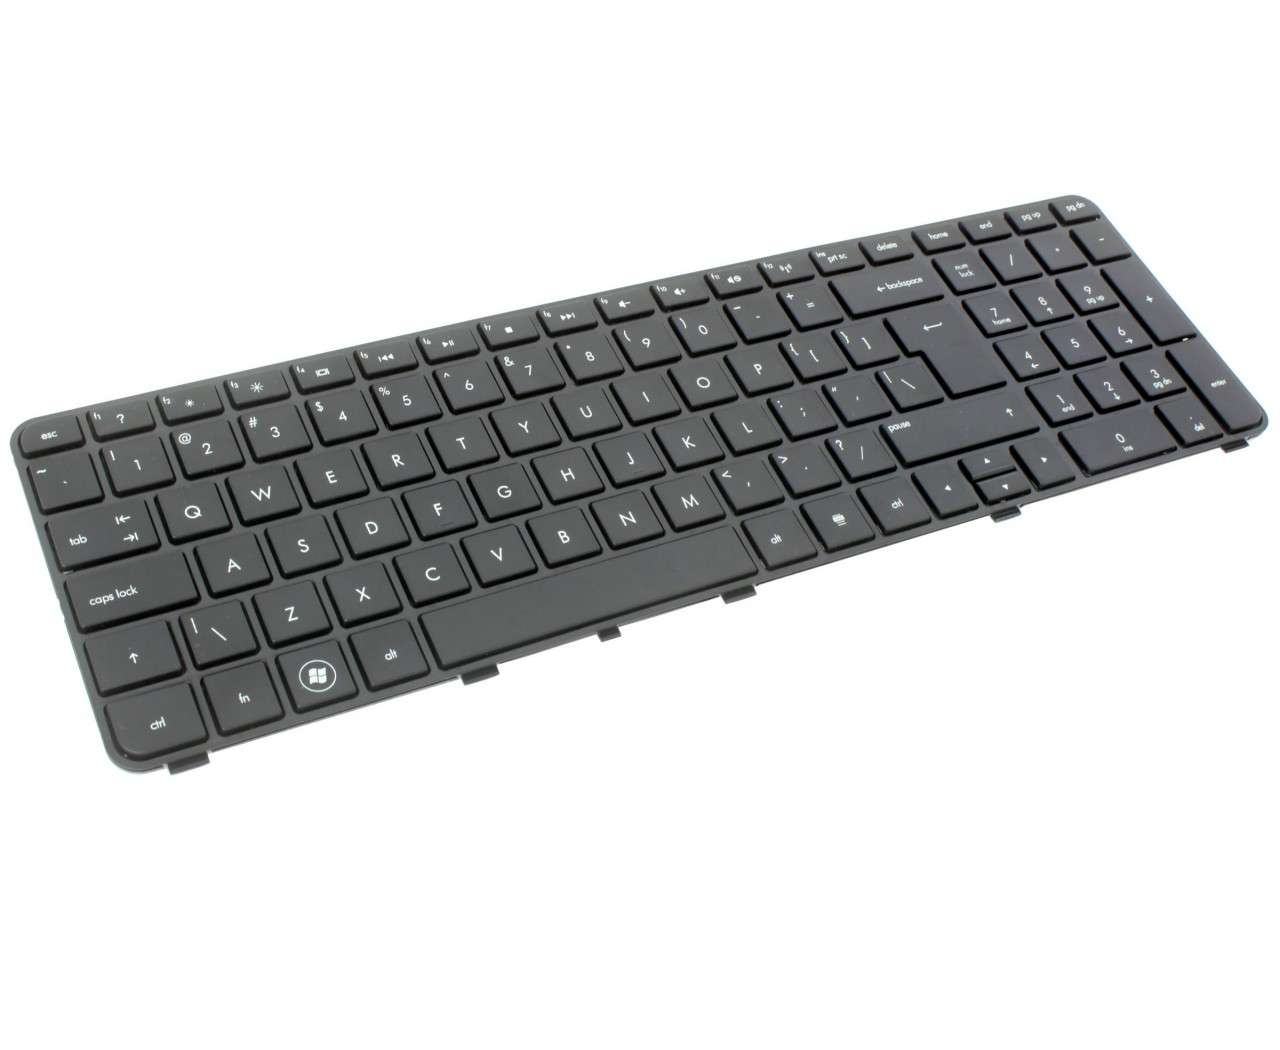 Tastatura HP AELX9I00210